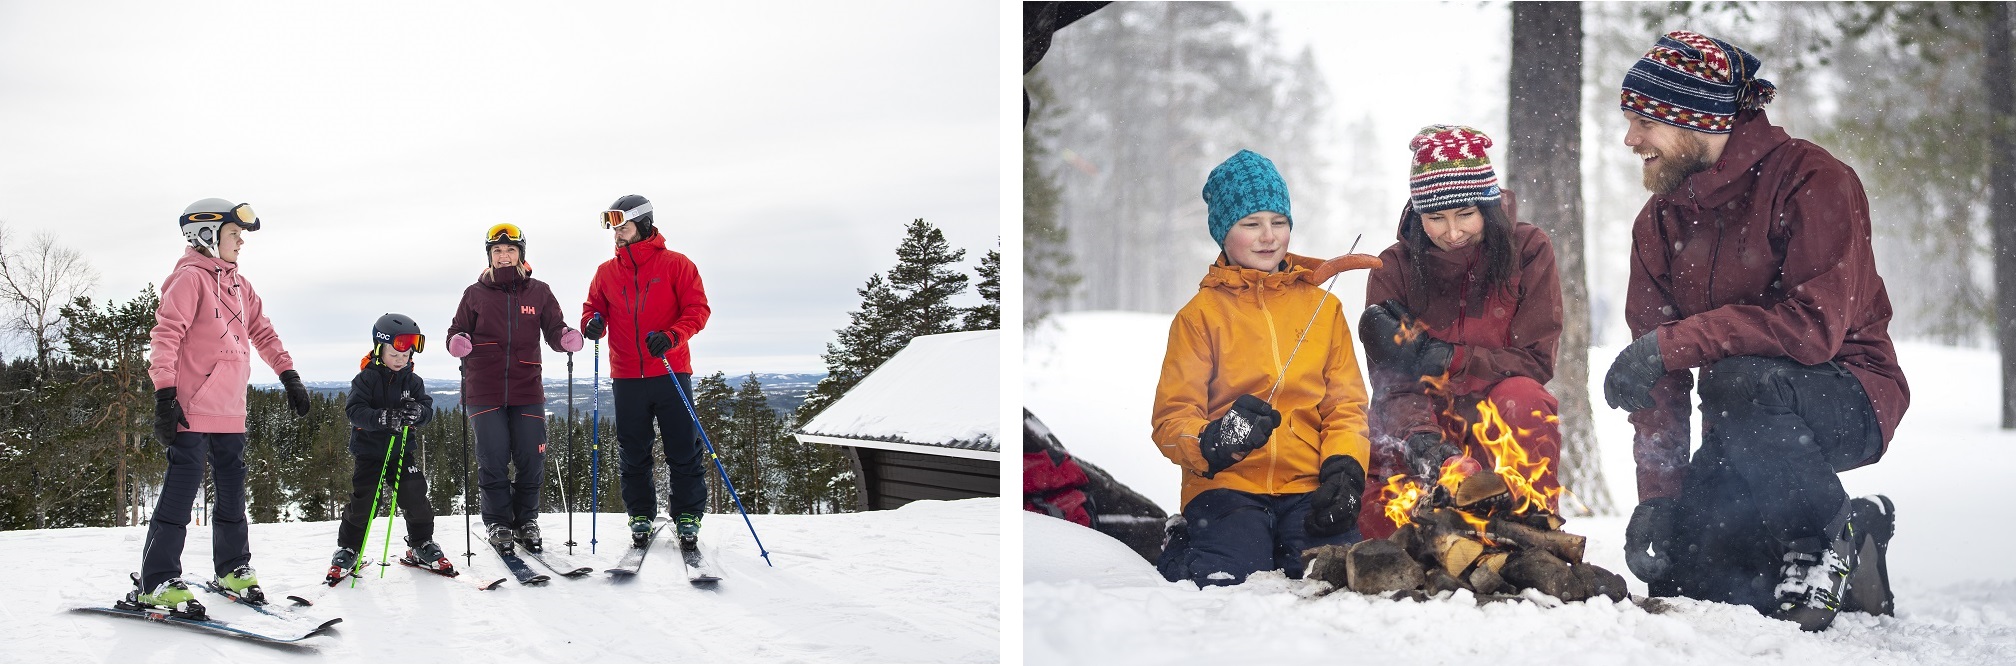 Bildcollage mit Eine Familie mit Skiern auf der Piste und Eine Familie am Feuer im Schnee mit Grillwurst..